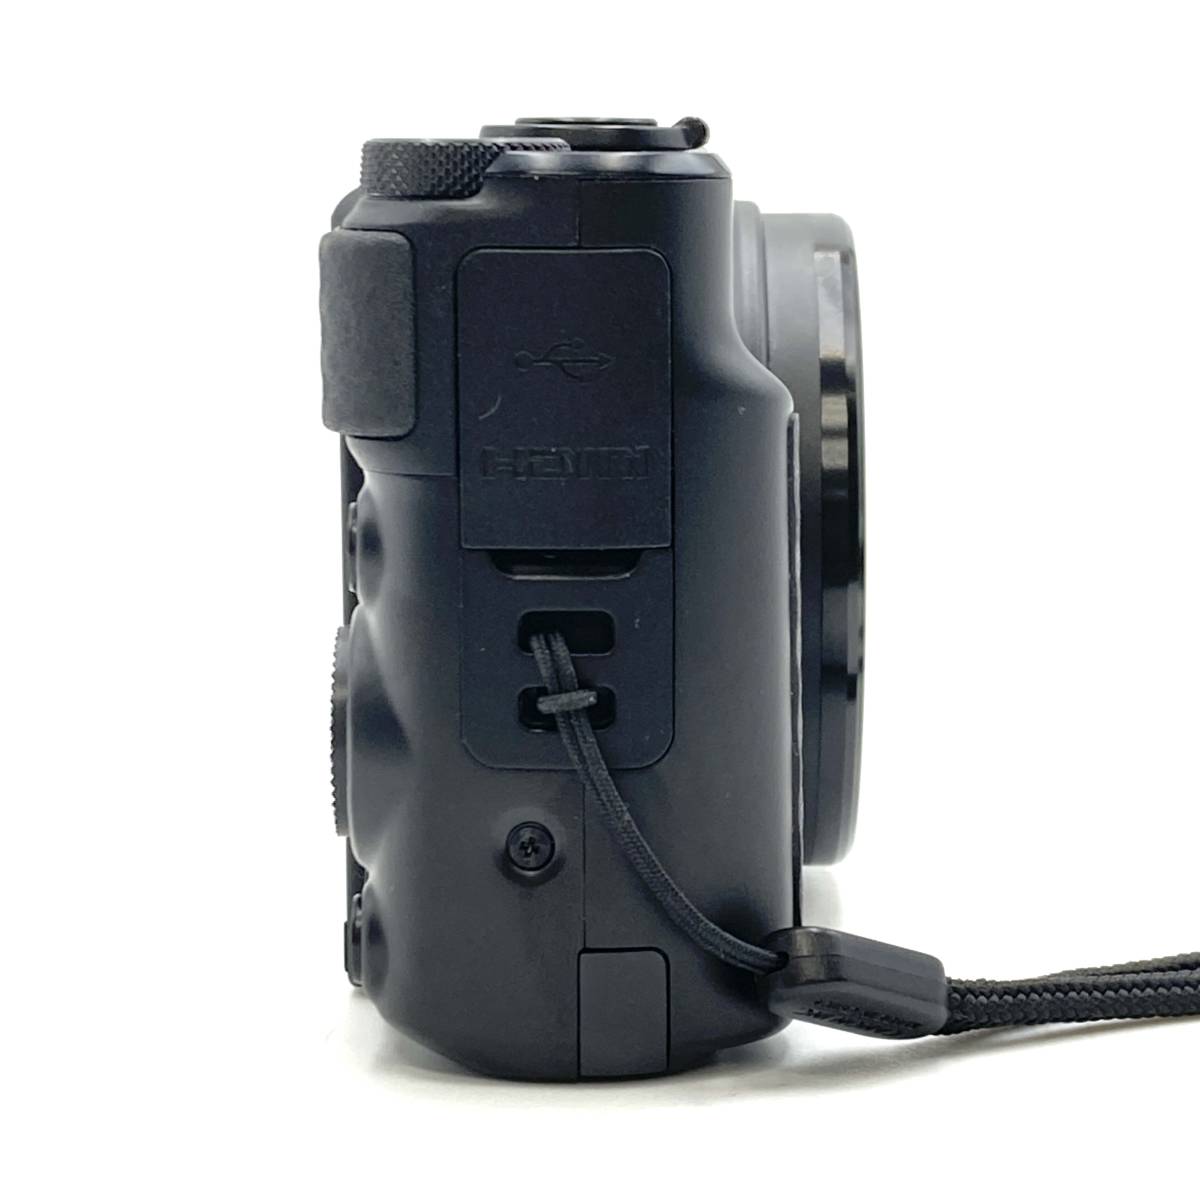 キヤノン デジタルカメラ「PowerShot SX740 HS」(シルバー